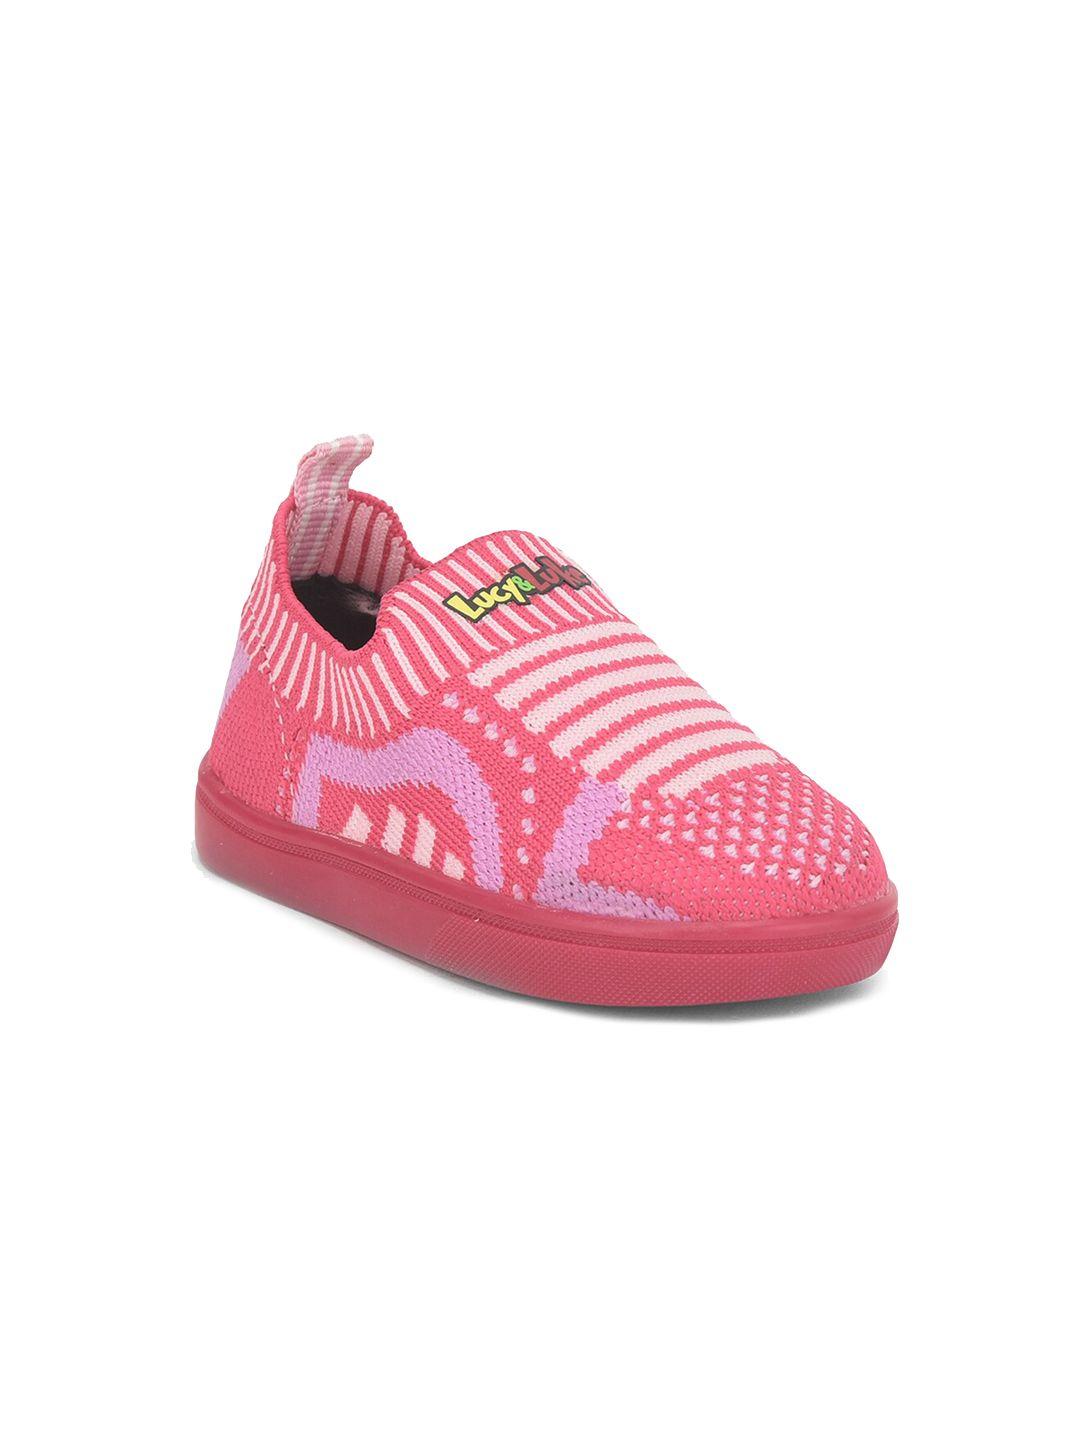 liberty kids-boys pink printed slip-on sneakers